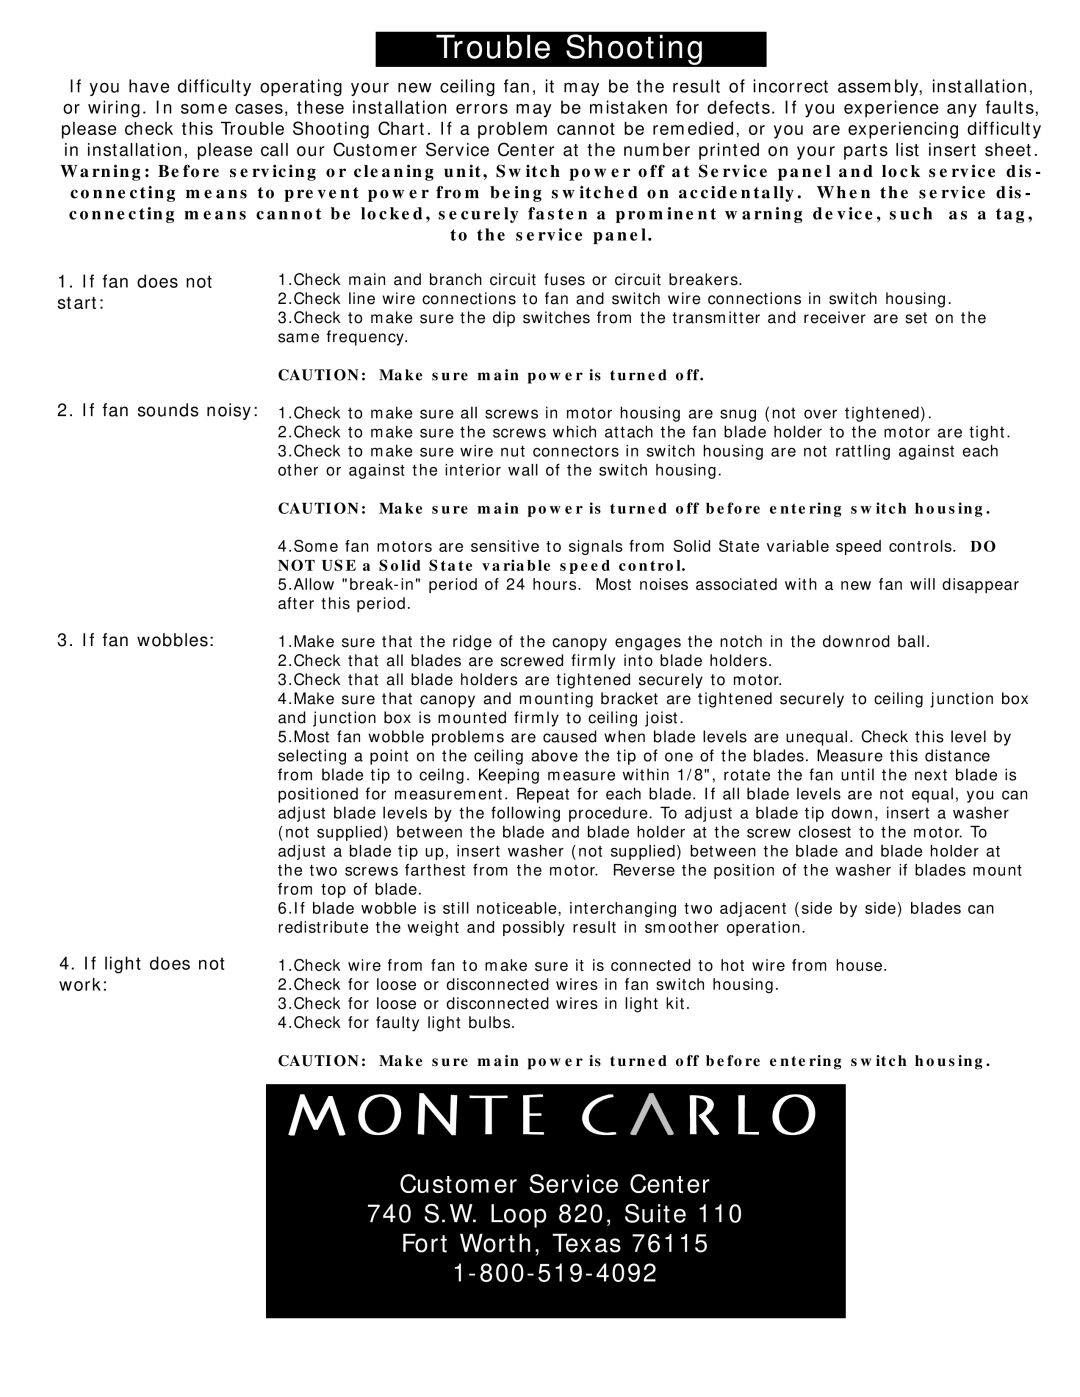 Monte Carlo Fan Company 5YM52 Customer Service Center 740 S.W. Loop 820, Suite, If fan wobbles 4.If light does not work 